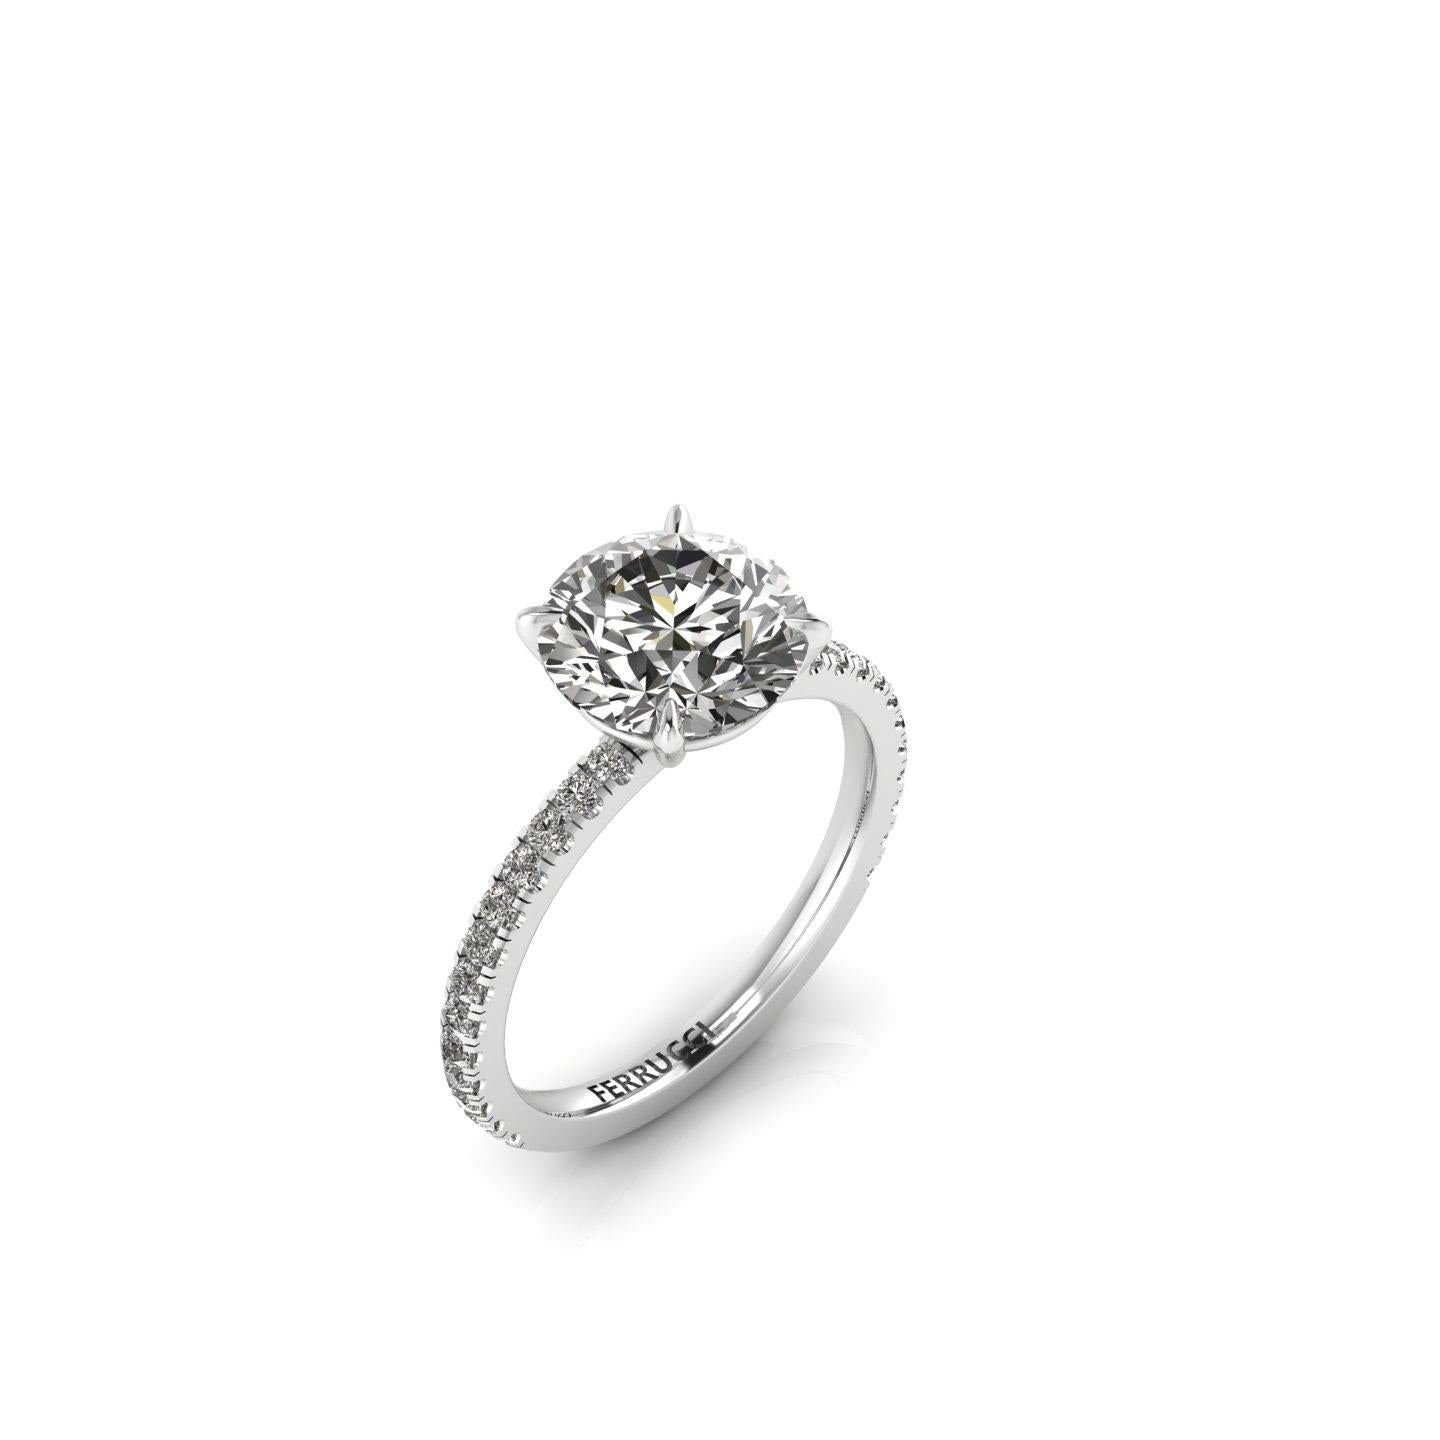 GIA zertifiziert 2,39 Karat runder Diamant J Farbe SI1 Klarheit in Platin 950.
Weiße Diamanten sind mit insgesamt ca. 0,28 Karat auf dem Schaft eingefasst.
Dieser atemberaubende Diamantring hat eine niedrige Fassung.

Ring Größe 5  3/4 komplimentär